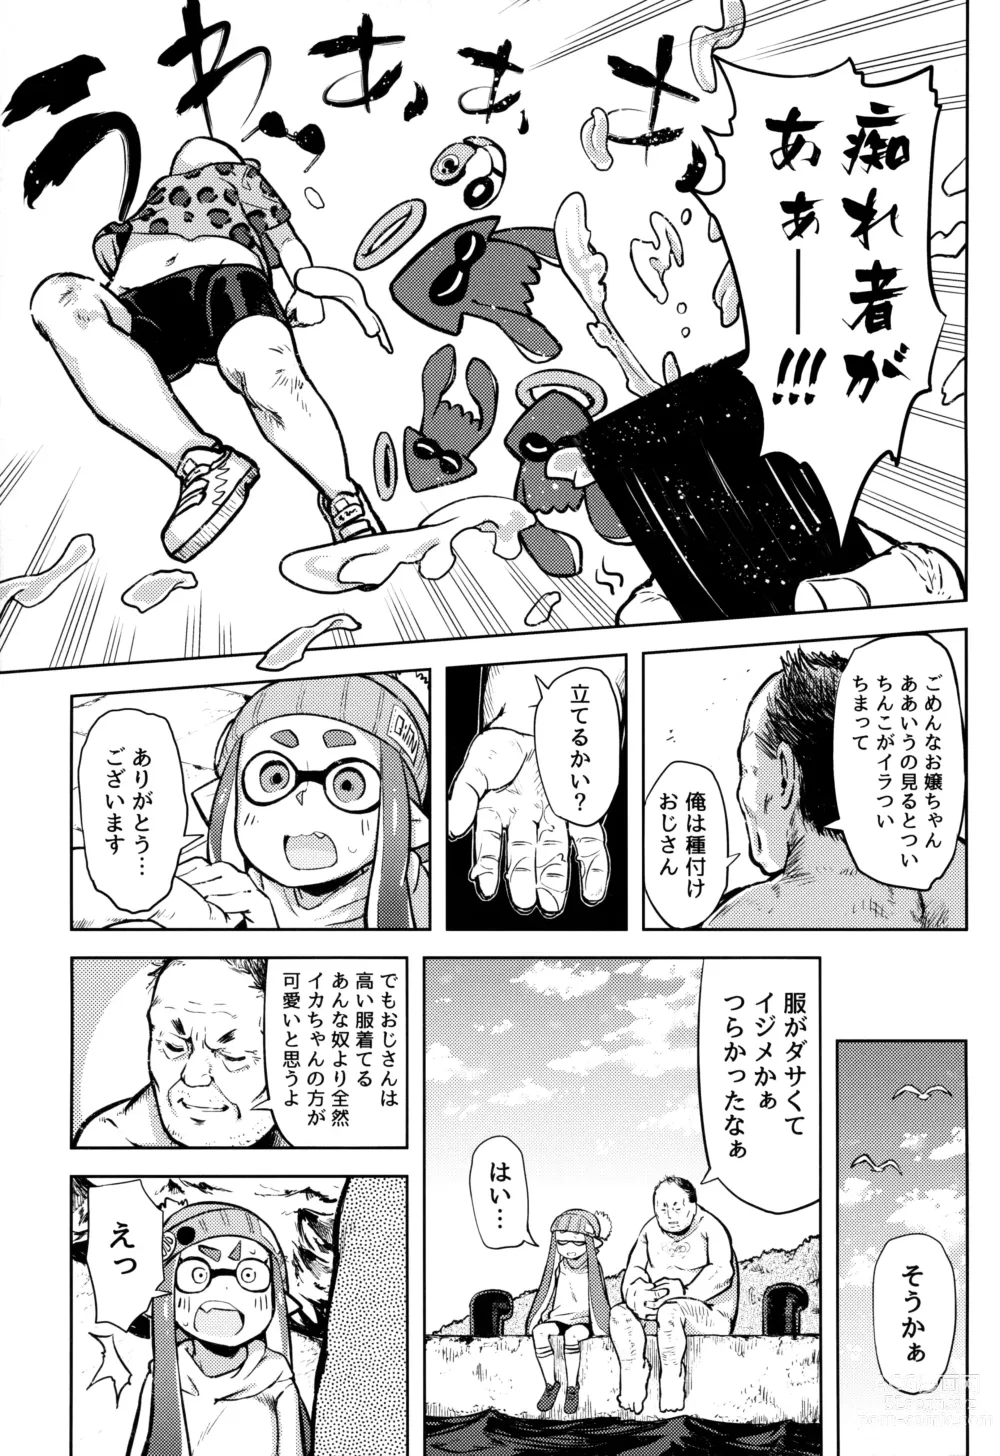 Page 4 of doujinshi Ero Ika Yori Ai o Komete